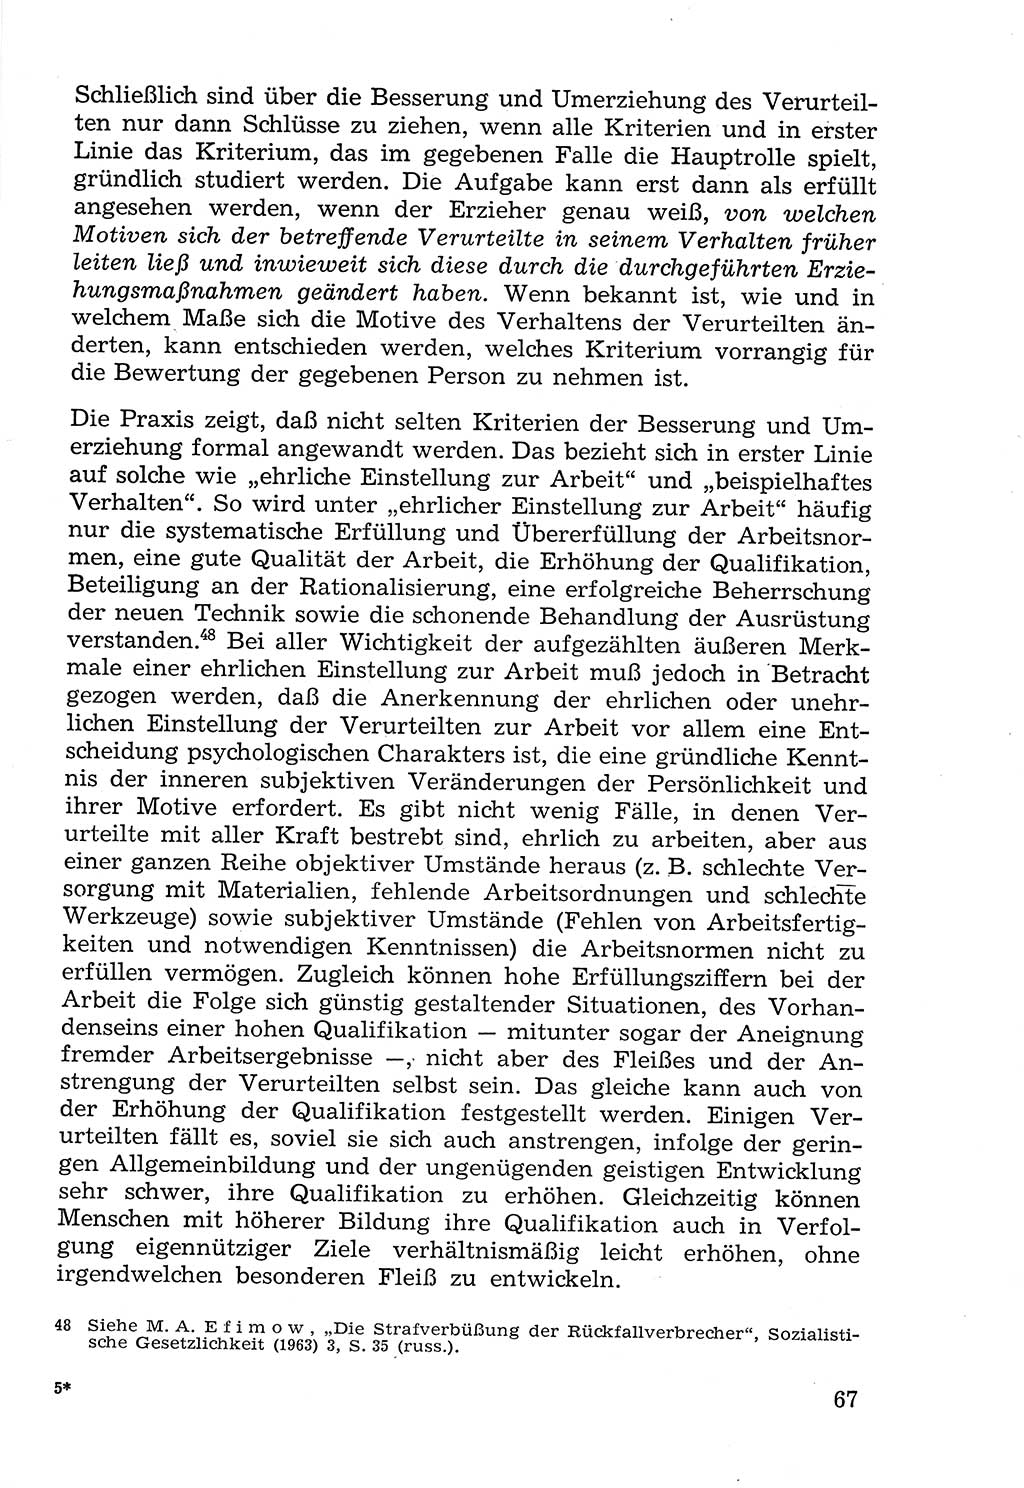 Lehrbuch der Strafvollzugspädagogik [Deutsche Demokratische Republik (DDR)] 1969, Seite 67 (Lb. SV-Pd. DDR 1969, S. 67)